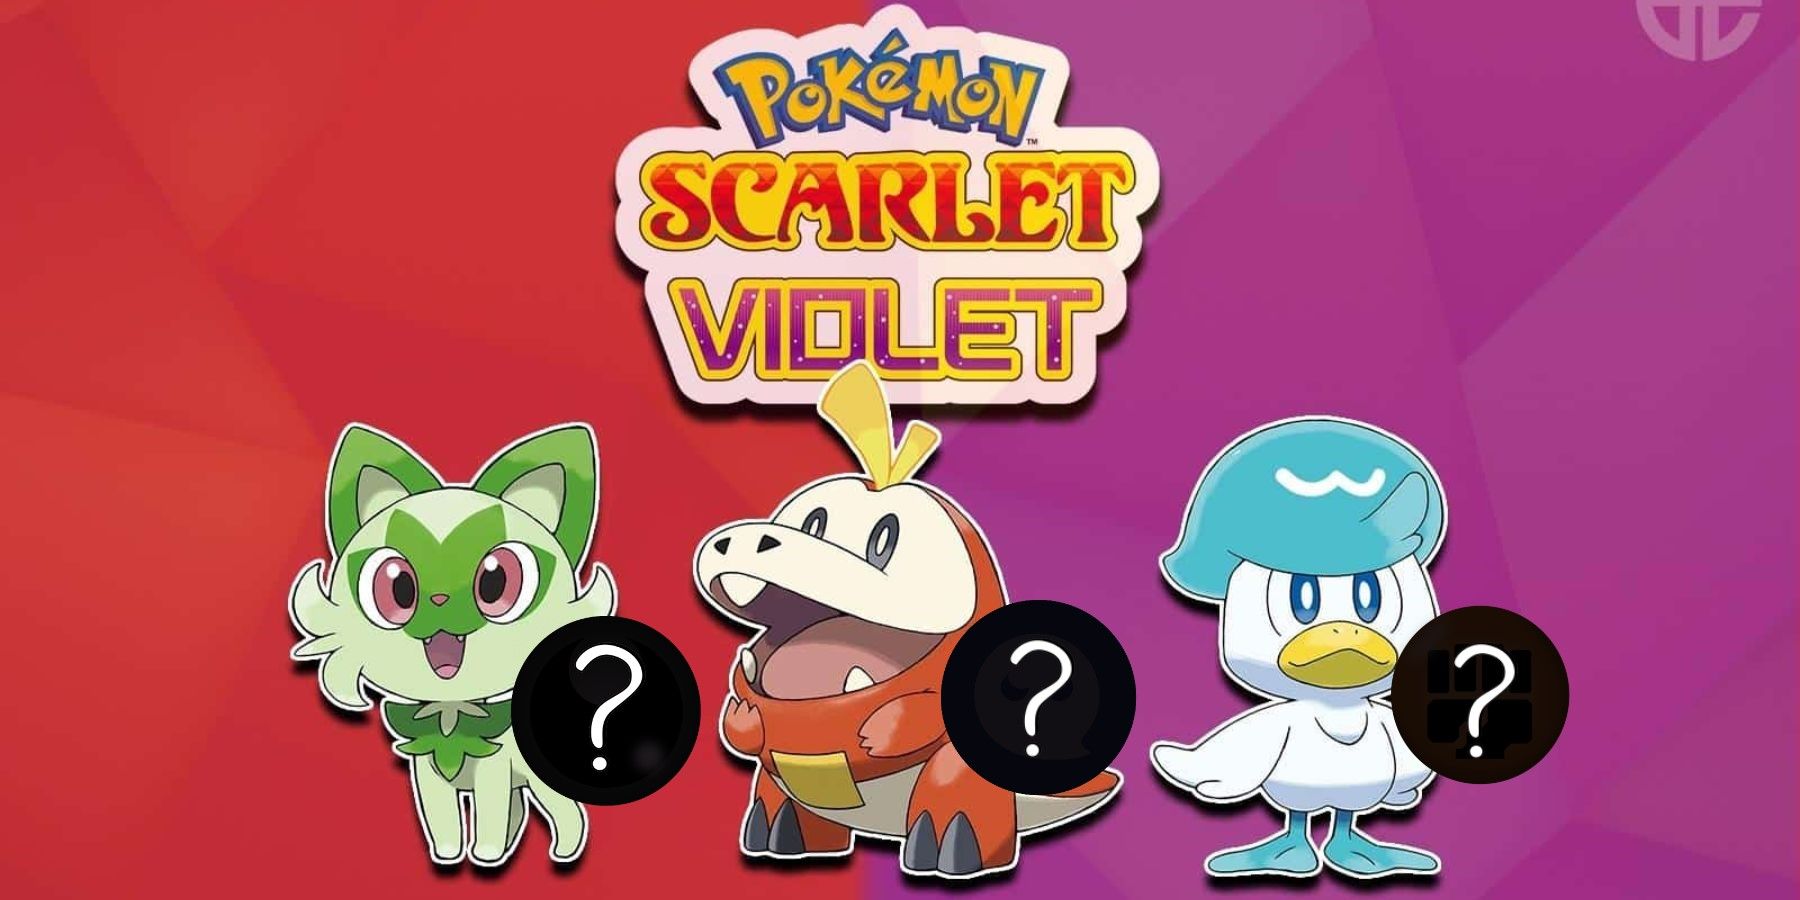 STARTER EVOLUTION LEAKS for Pokemon Scarlet & Violet Explained